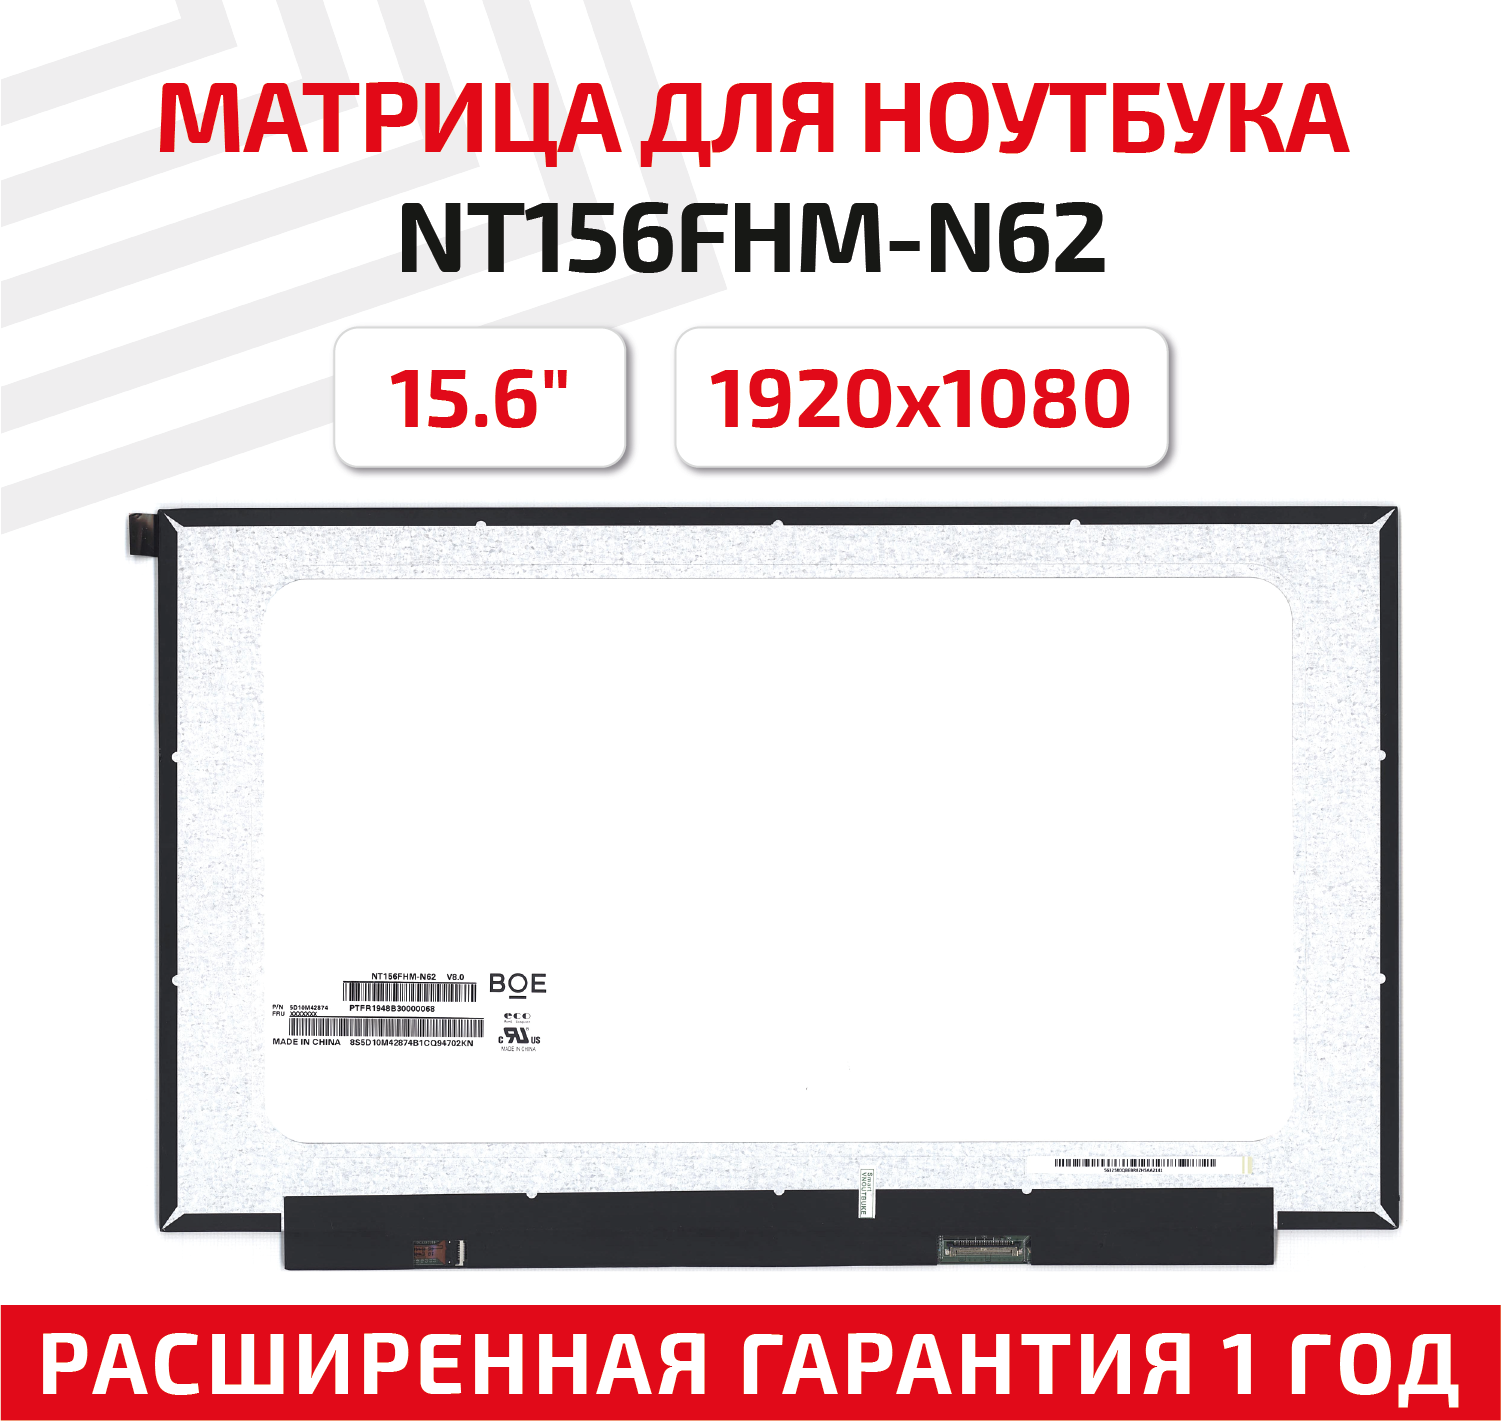 Матрица (экран) для ноутбука NT156FHM-N62, 15.6", 1920x1080, Slim (тонкая), 30-pin, светодиодная (LED), матовая